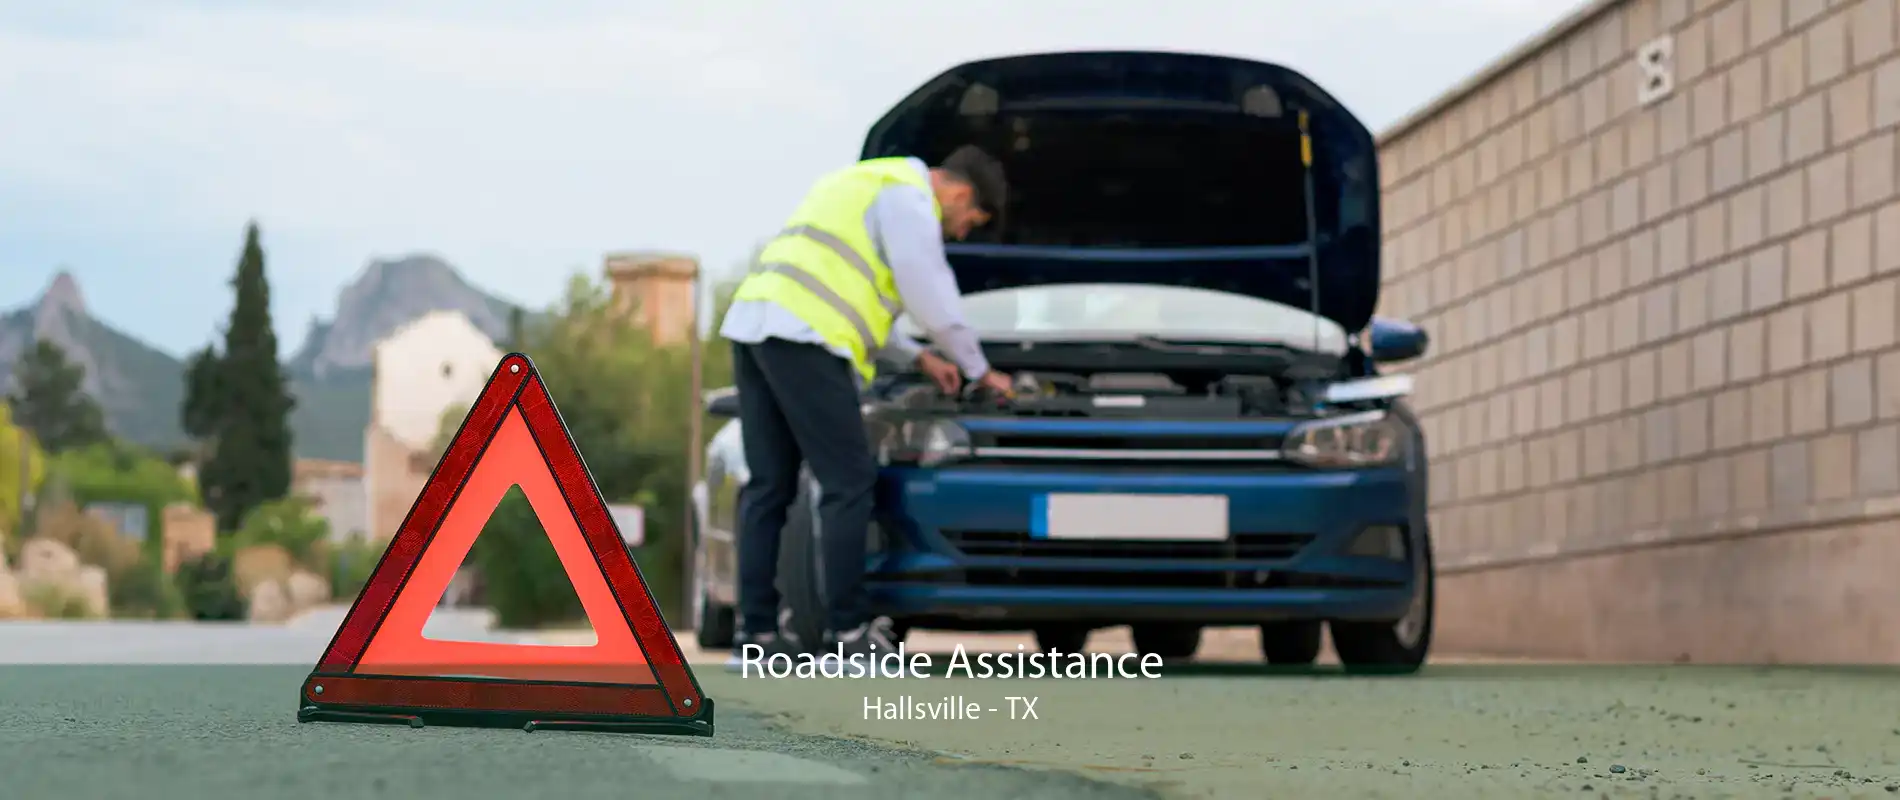 Roadside Assistance Hallsville - TX